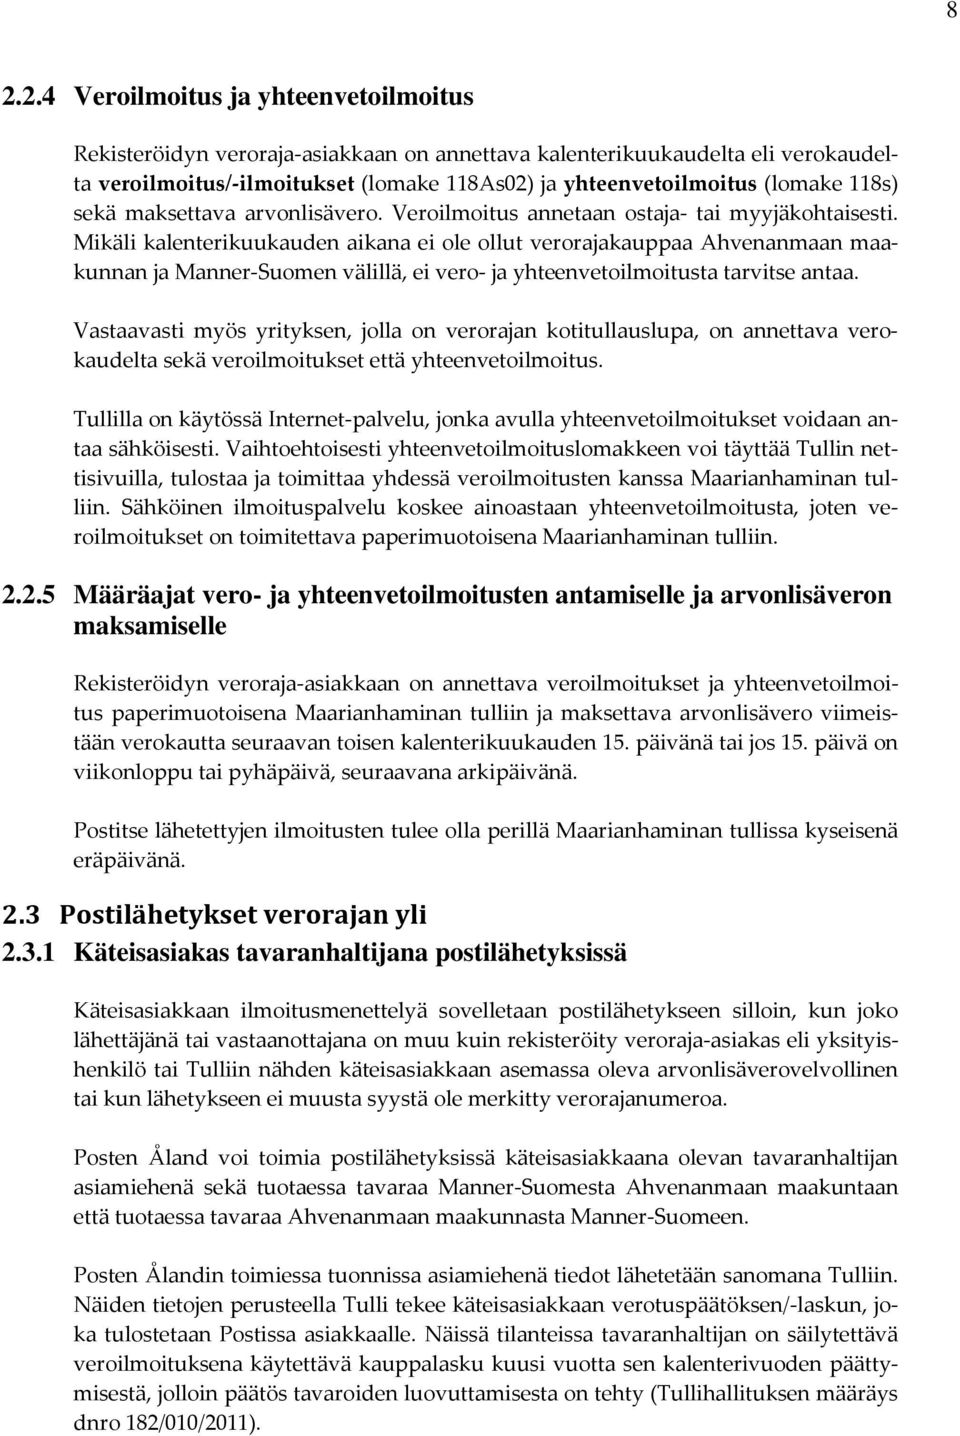 Mikäli kalenterikuukauden aikana ei ole ollut verorajakauppaa Ahvenanmaan maakunnan ja Manner-Suomen välillä, ei vero- ja yhteenvetoilmoitusta tarvitse antaa.